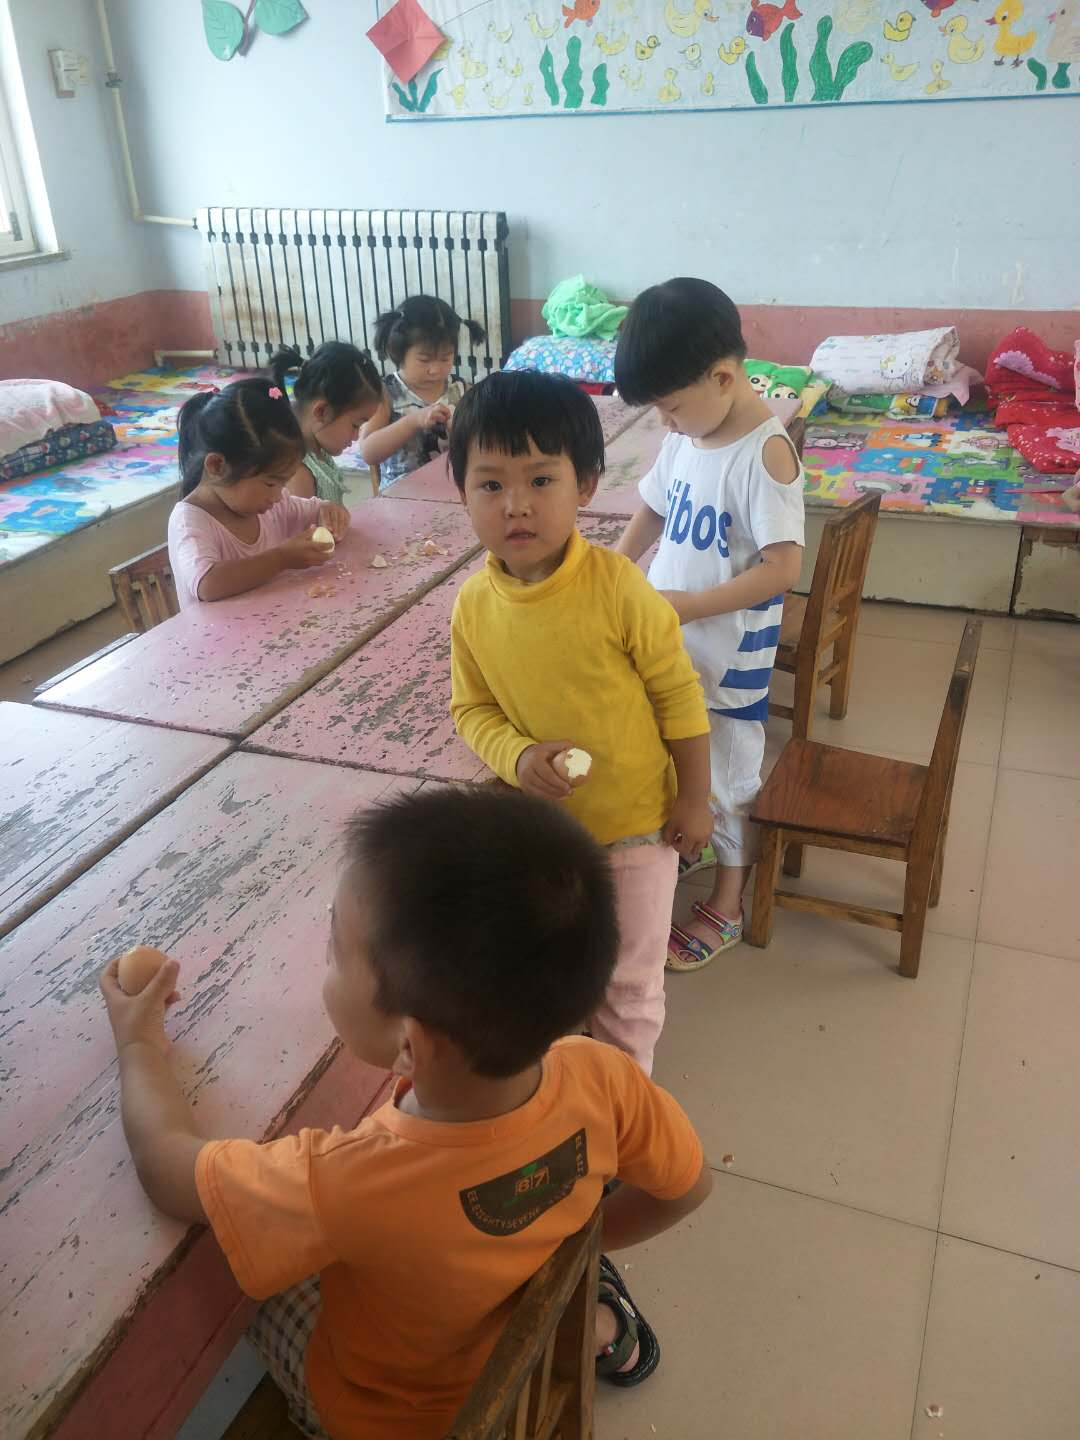 在幼儿园，与小朋友在一起的妮妮（图中穿黄色衣服的为妮妮）